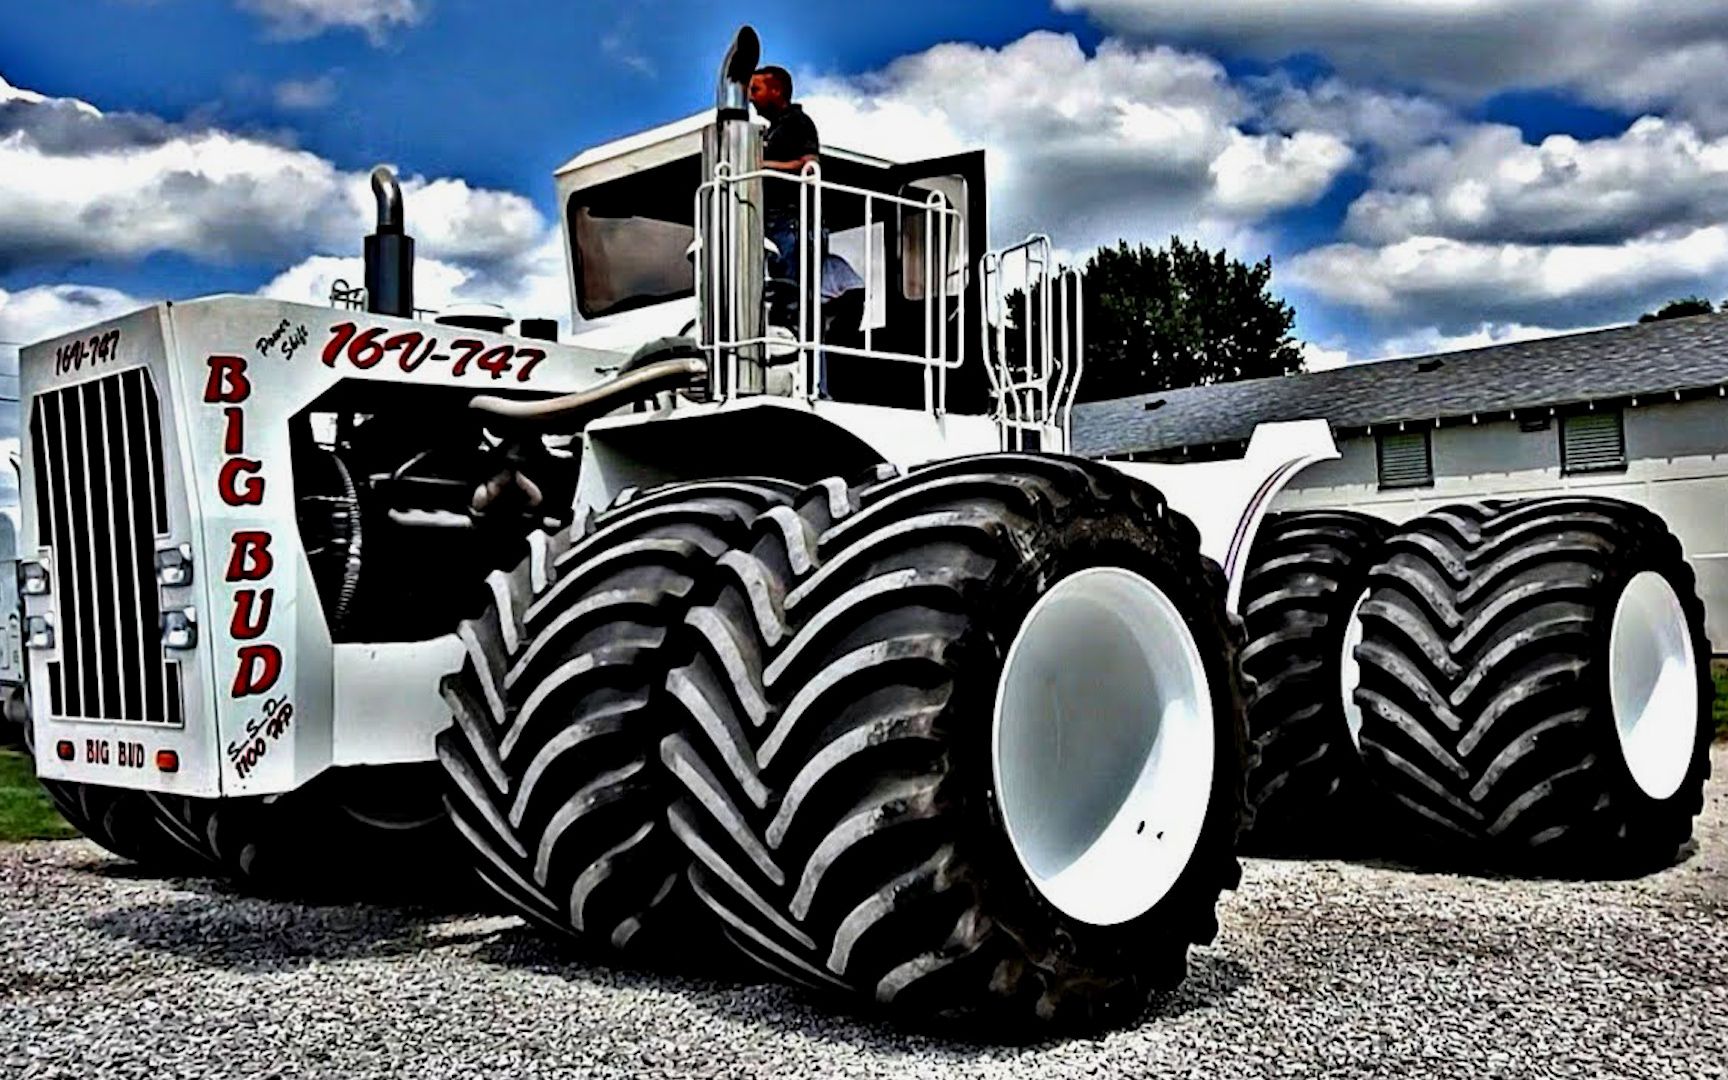 世界上最大的拖拉机,轮胎都比姚明高24厘米,全球仅此一辆!